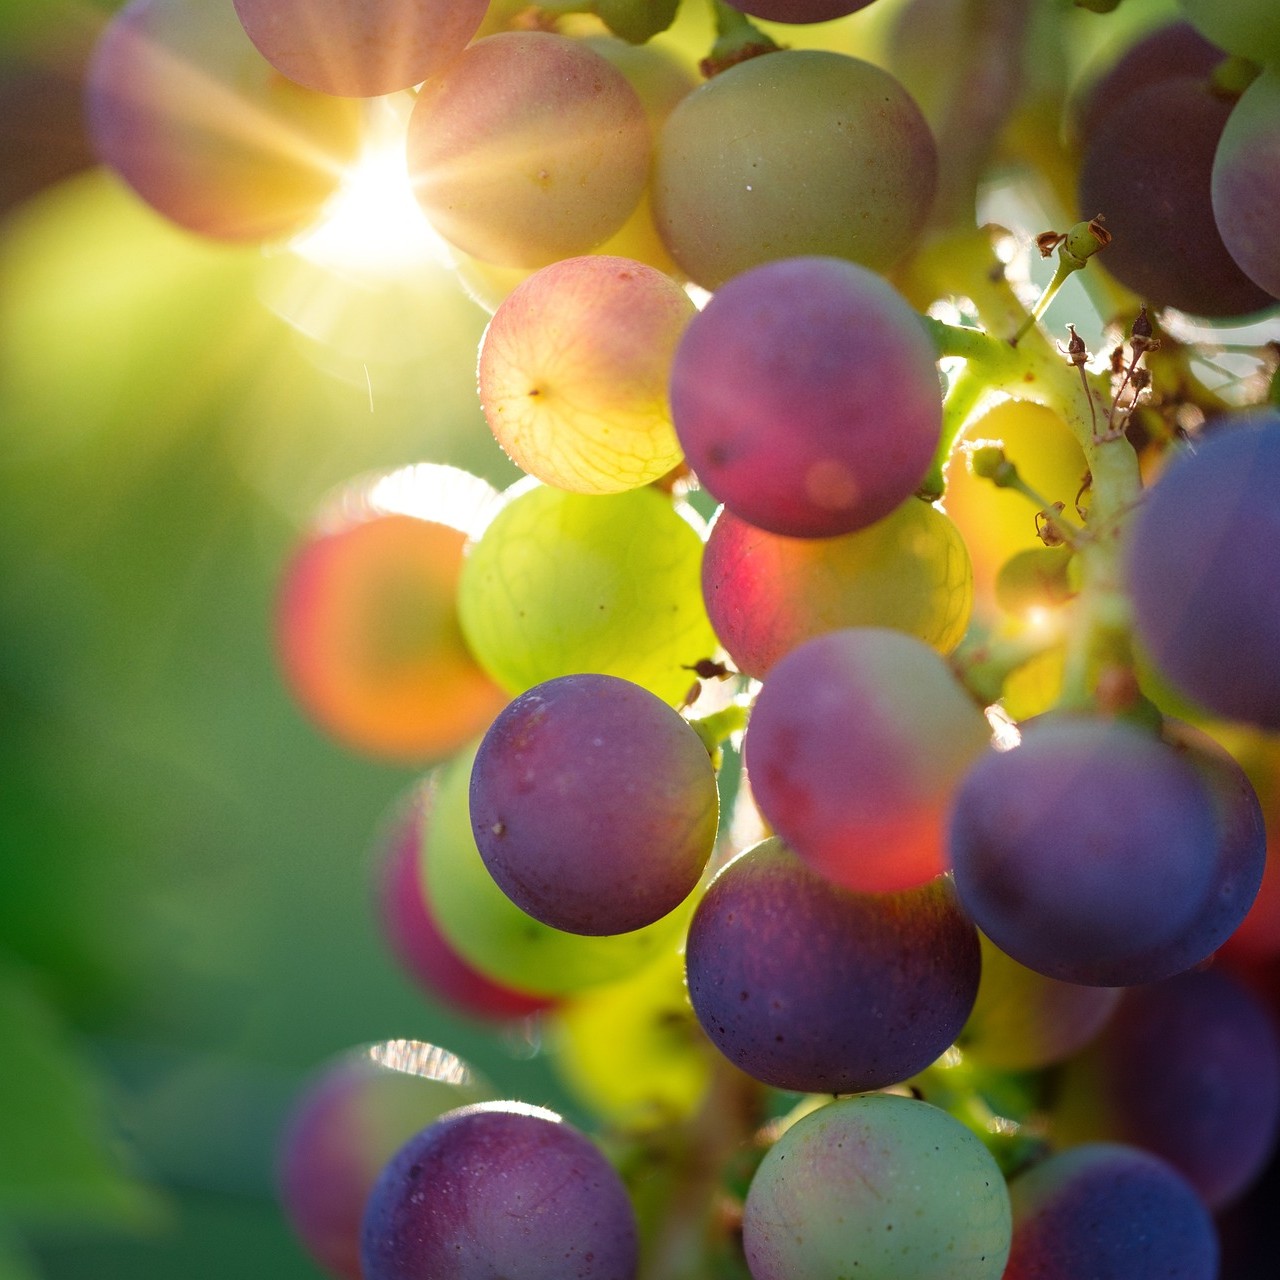 포도씨 추출물(Grape Seed Extract)을 소개하기 위한 포도 사진